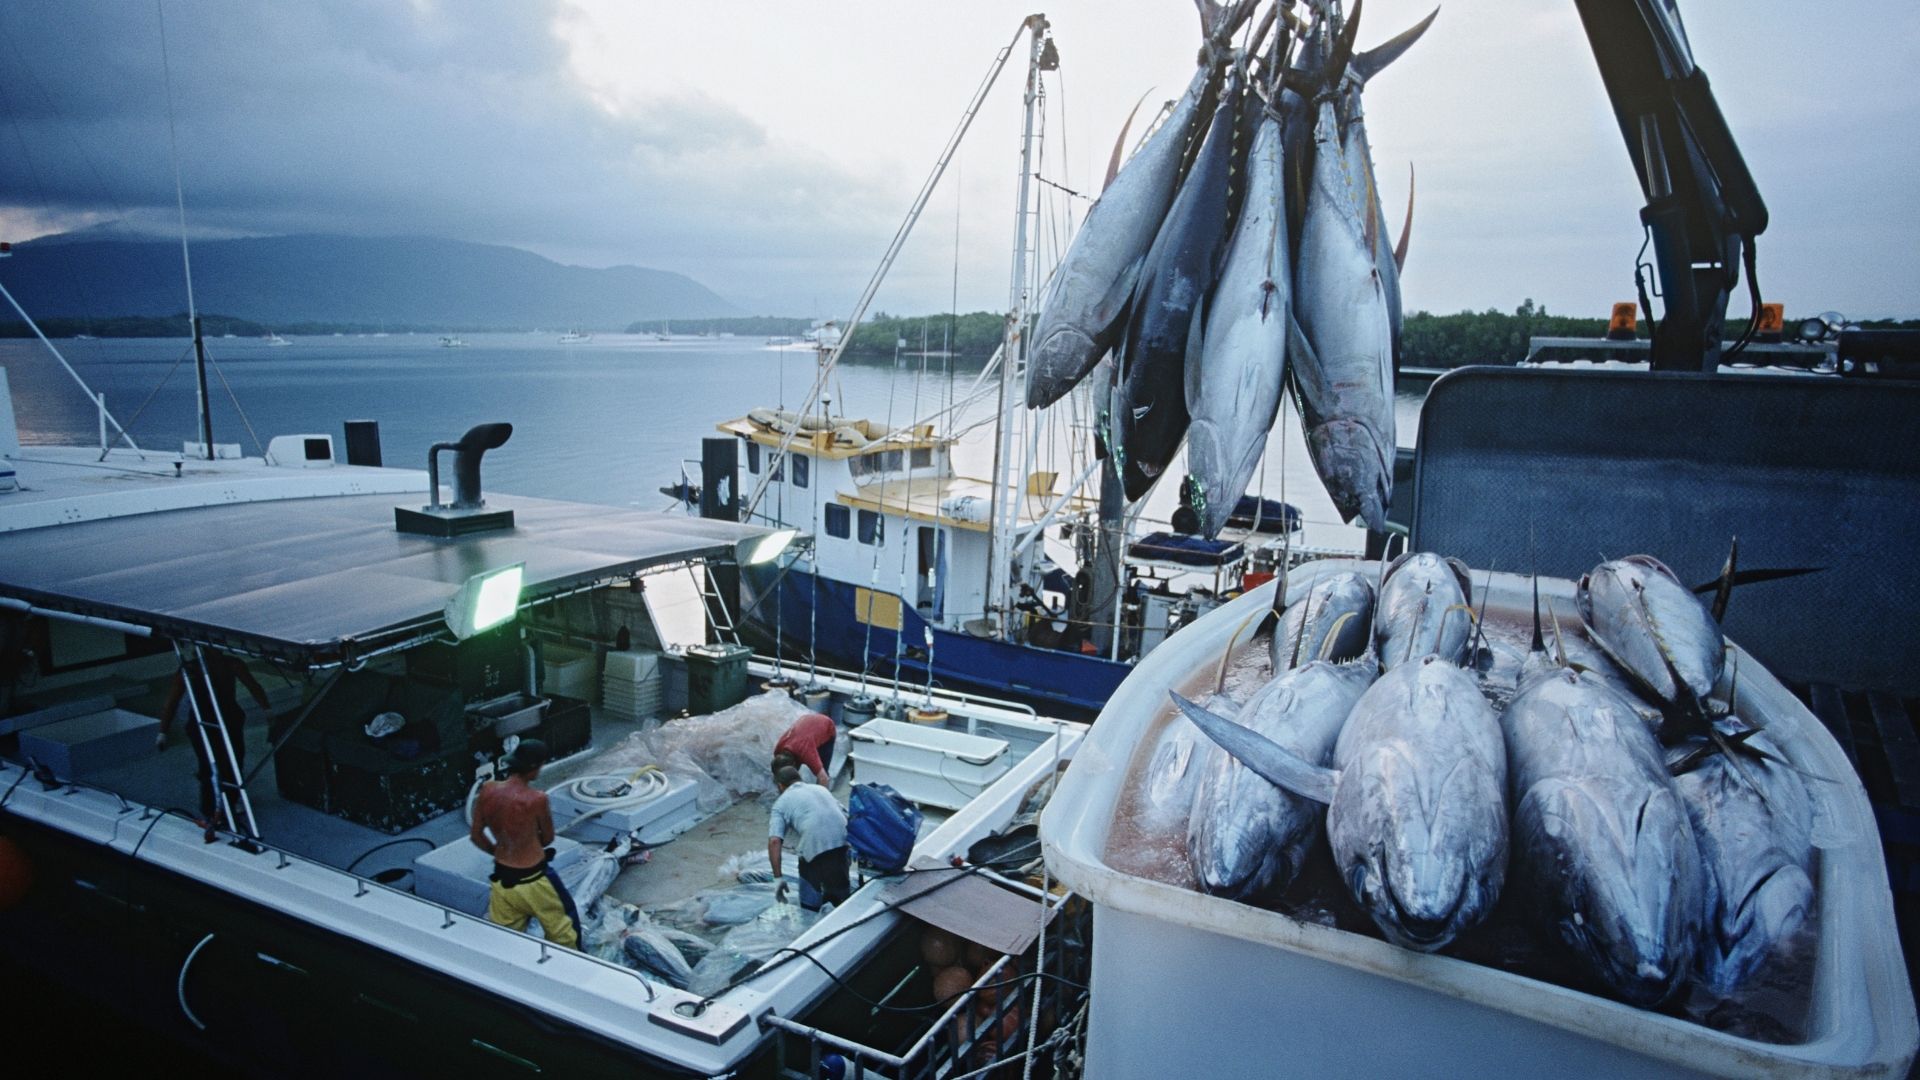 5 tháng, xuất khẩu của doanh nghiệp thủy sản trên sàn tăng trưởng kinh ngạc - Ảnh 1.